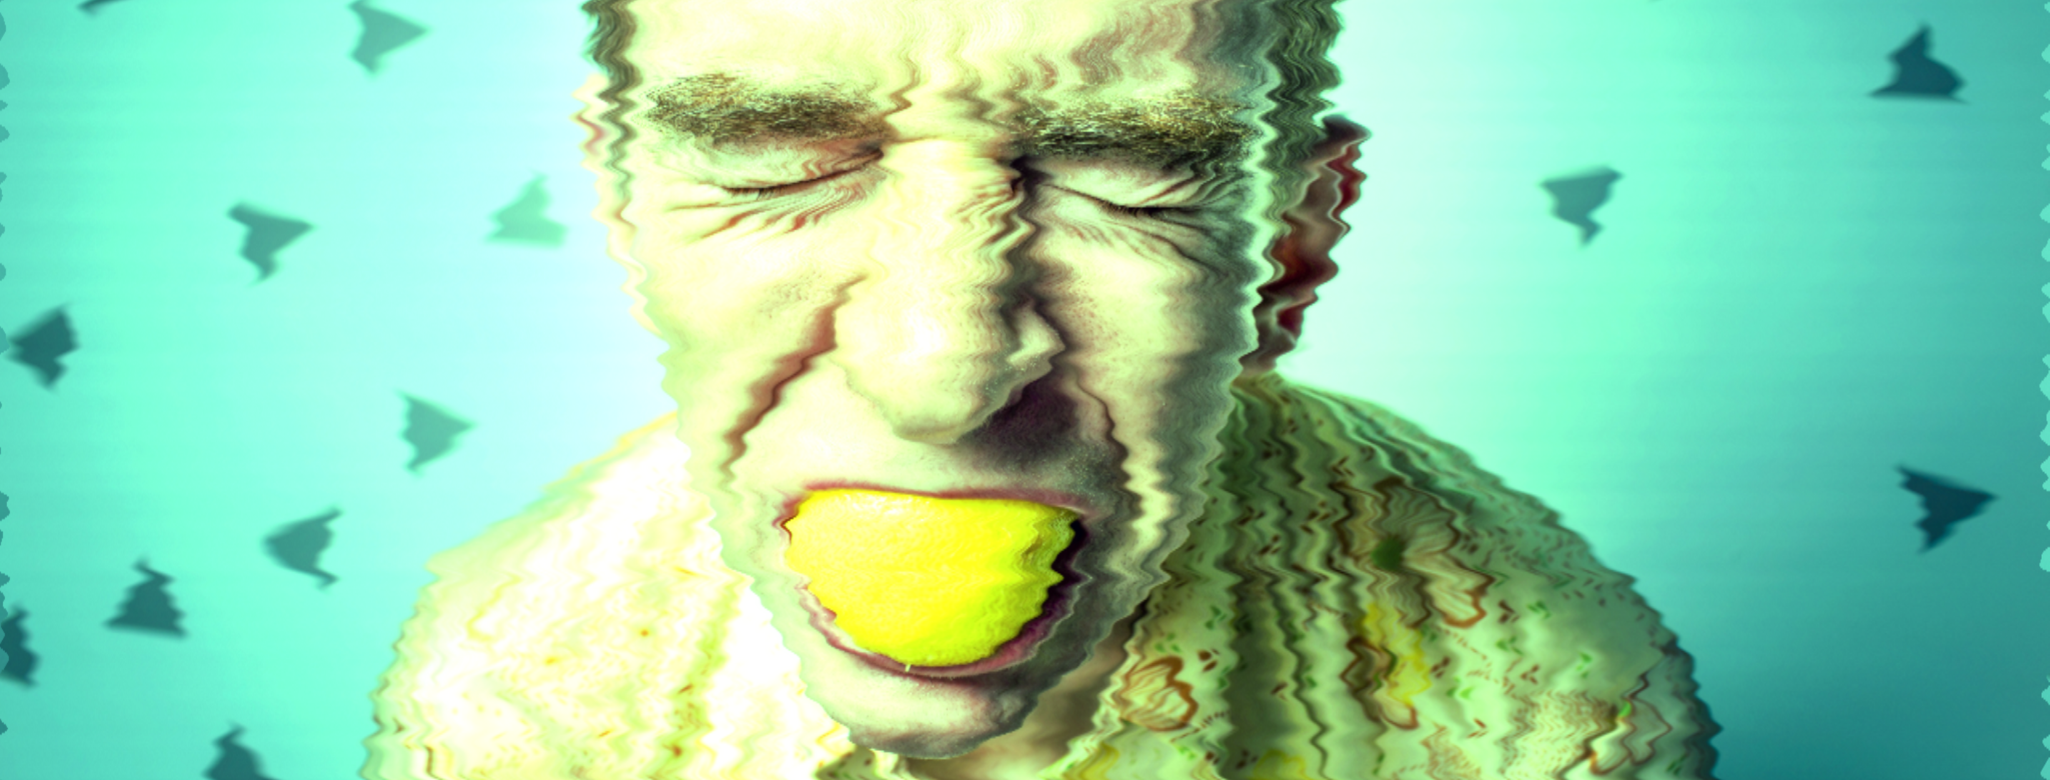 In Zitrone beißen